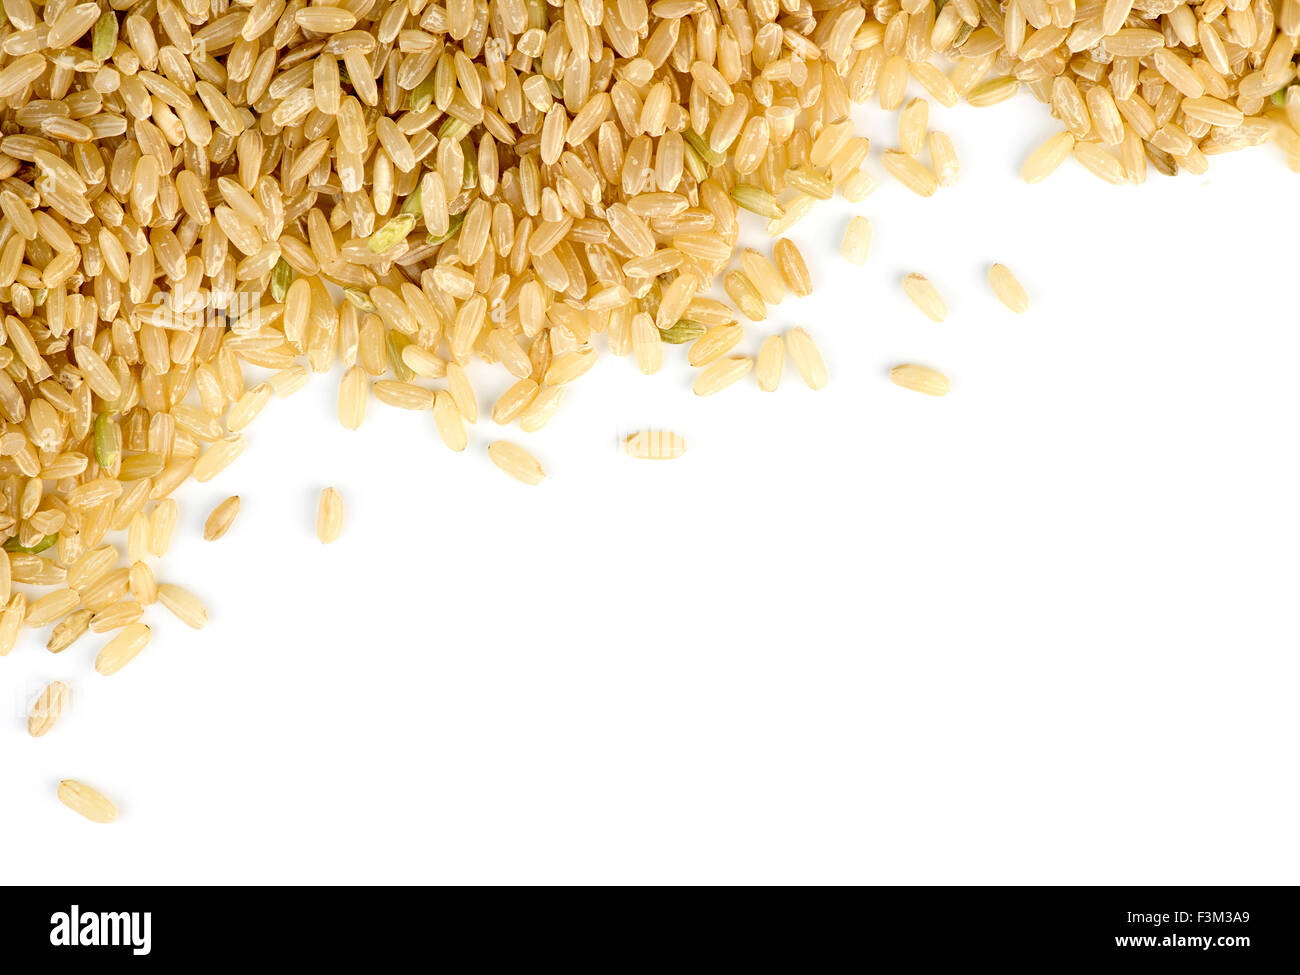 Brauner Reis verstreut gegen weiß mit Exemplar Stockfoto